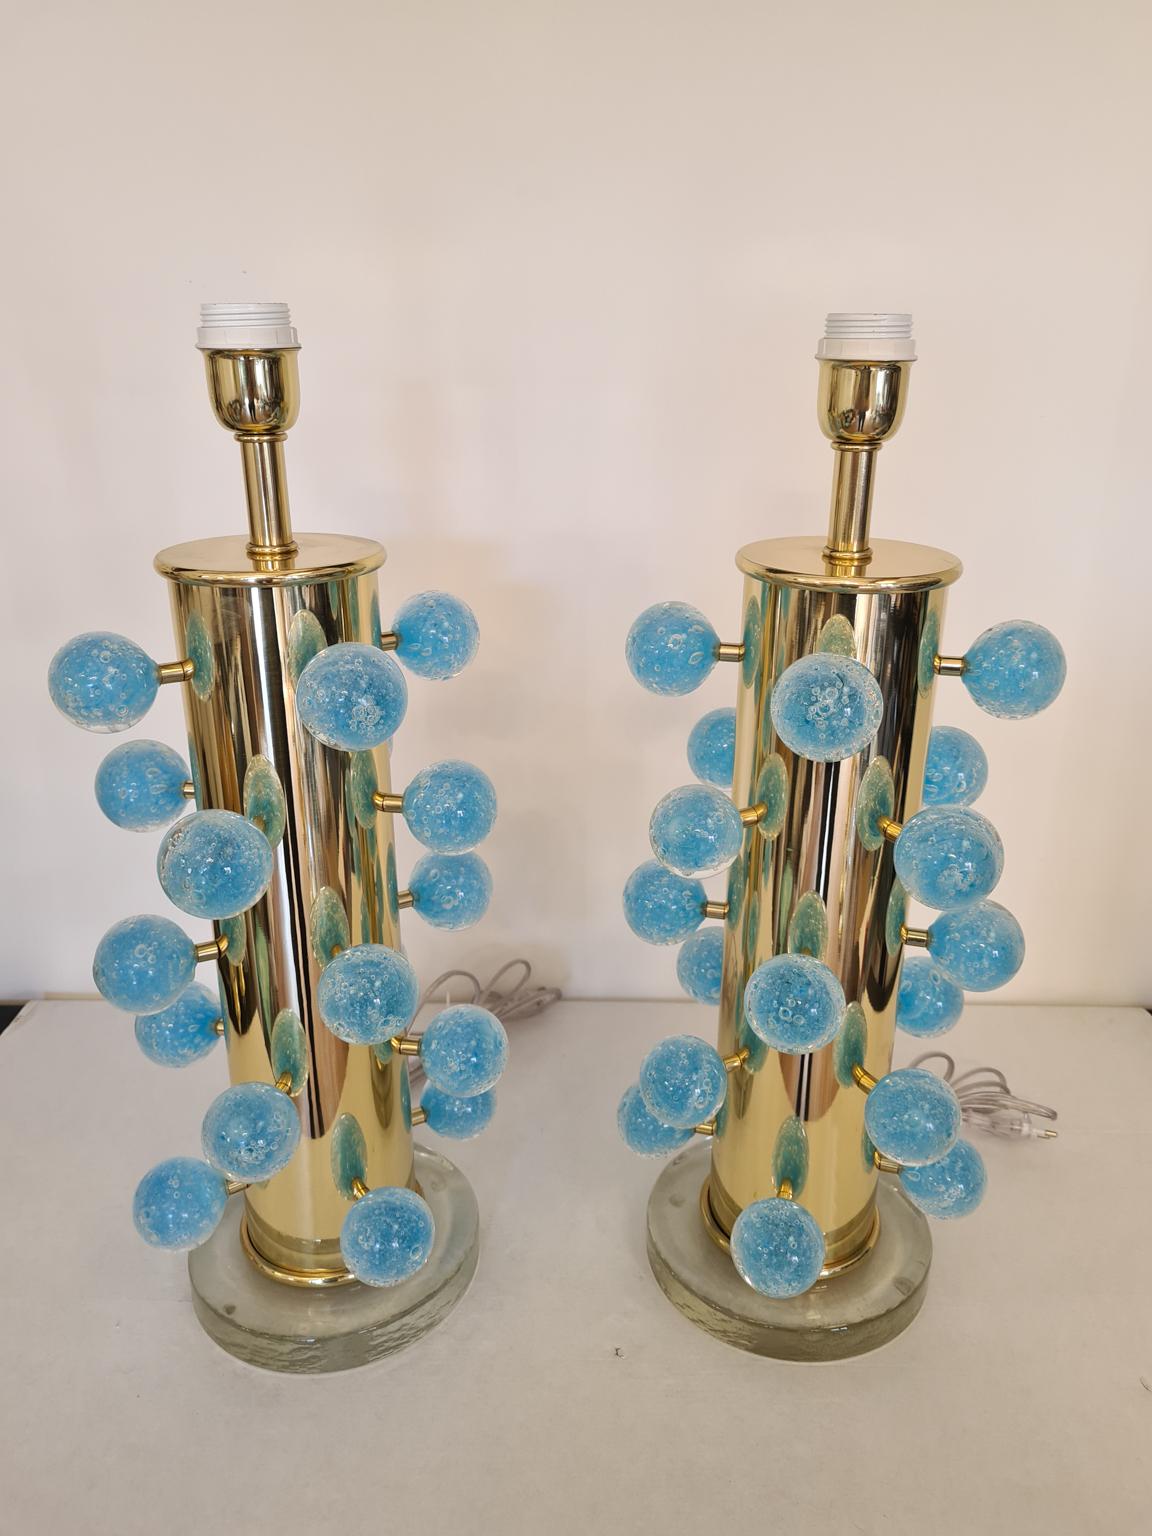 Exklusives Paar Tischlampen aus Murano-Glas mit aquamarinblauen Pulegoso-Kugeln, transparentem Kristallsockel und verchromtem Rahmen. 
Pulegoso Verarbeitung sind Blasen im Inneren der Farbe.
Die Lampe wurde mit großer Sorgfalt und Präzision von